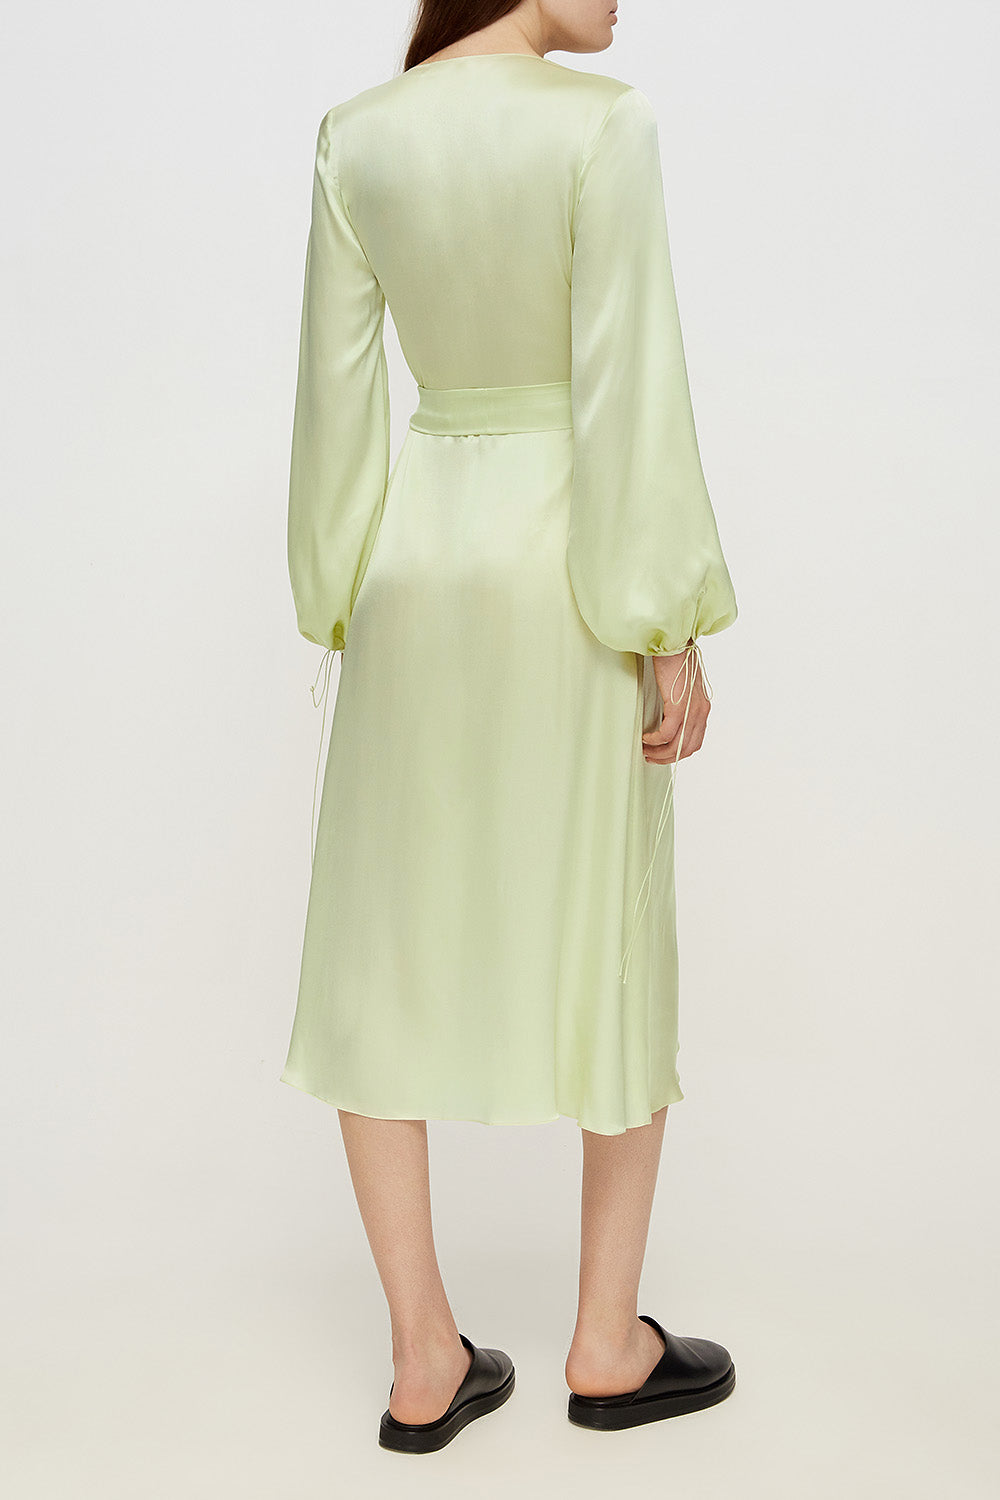 Wrap silk dress in sorbet green